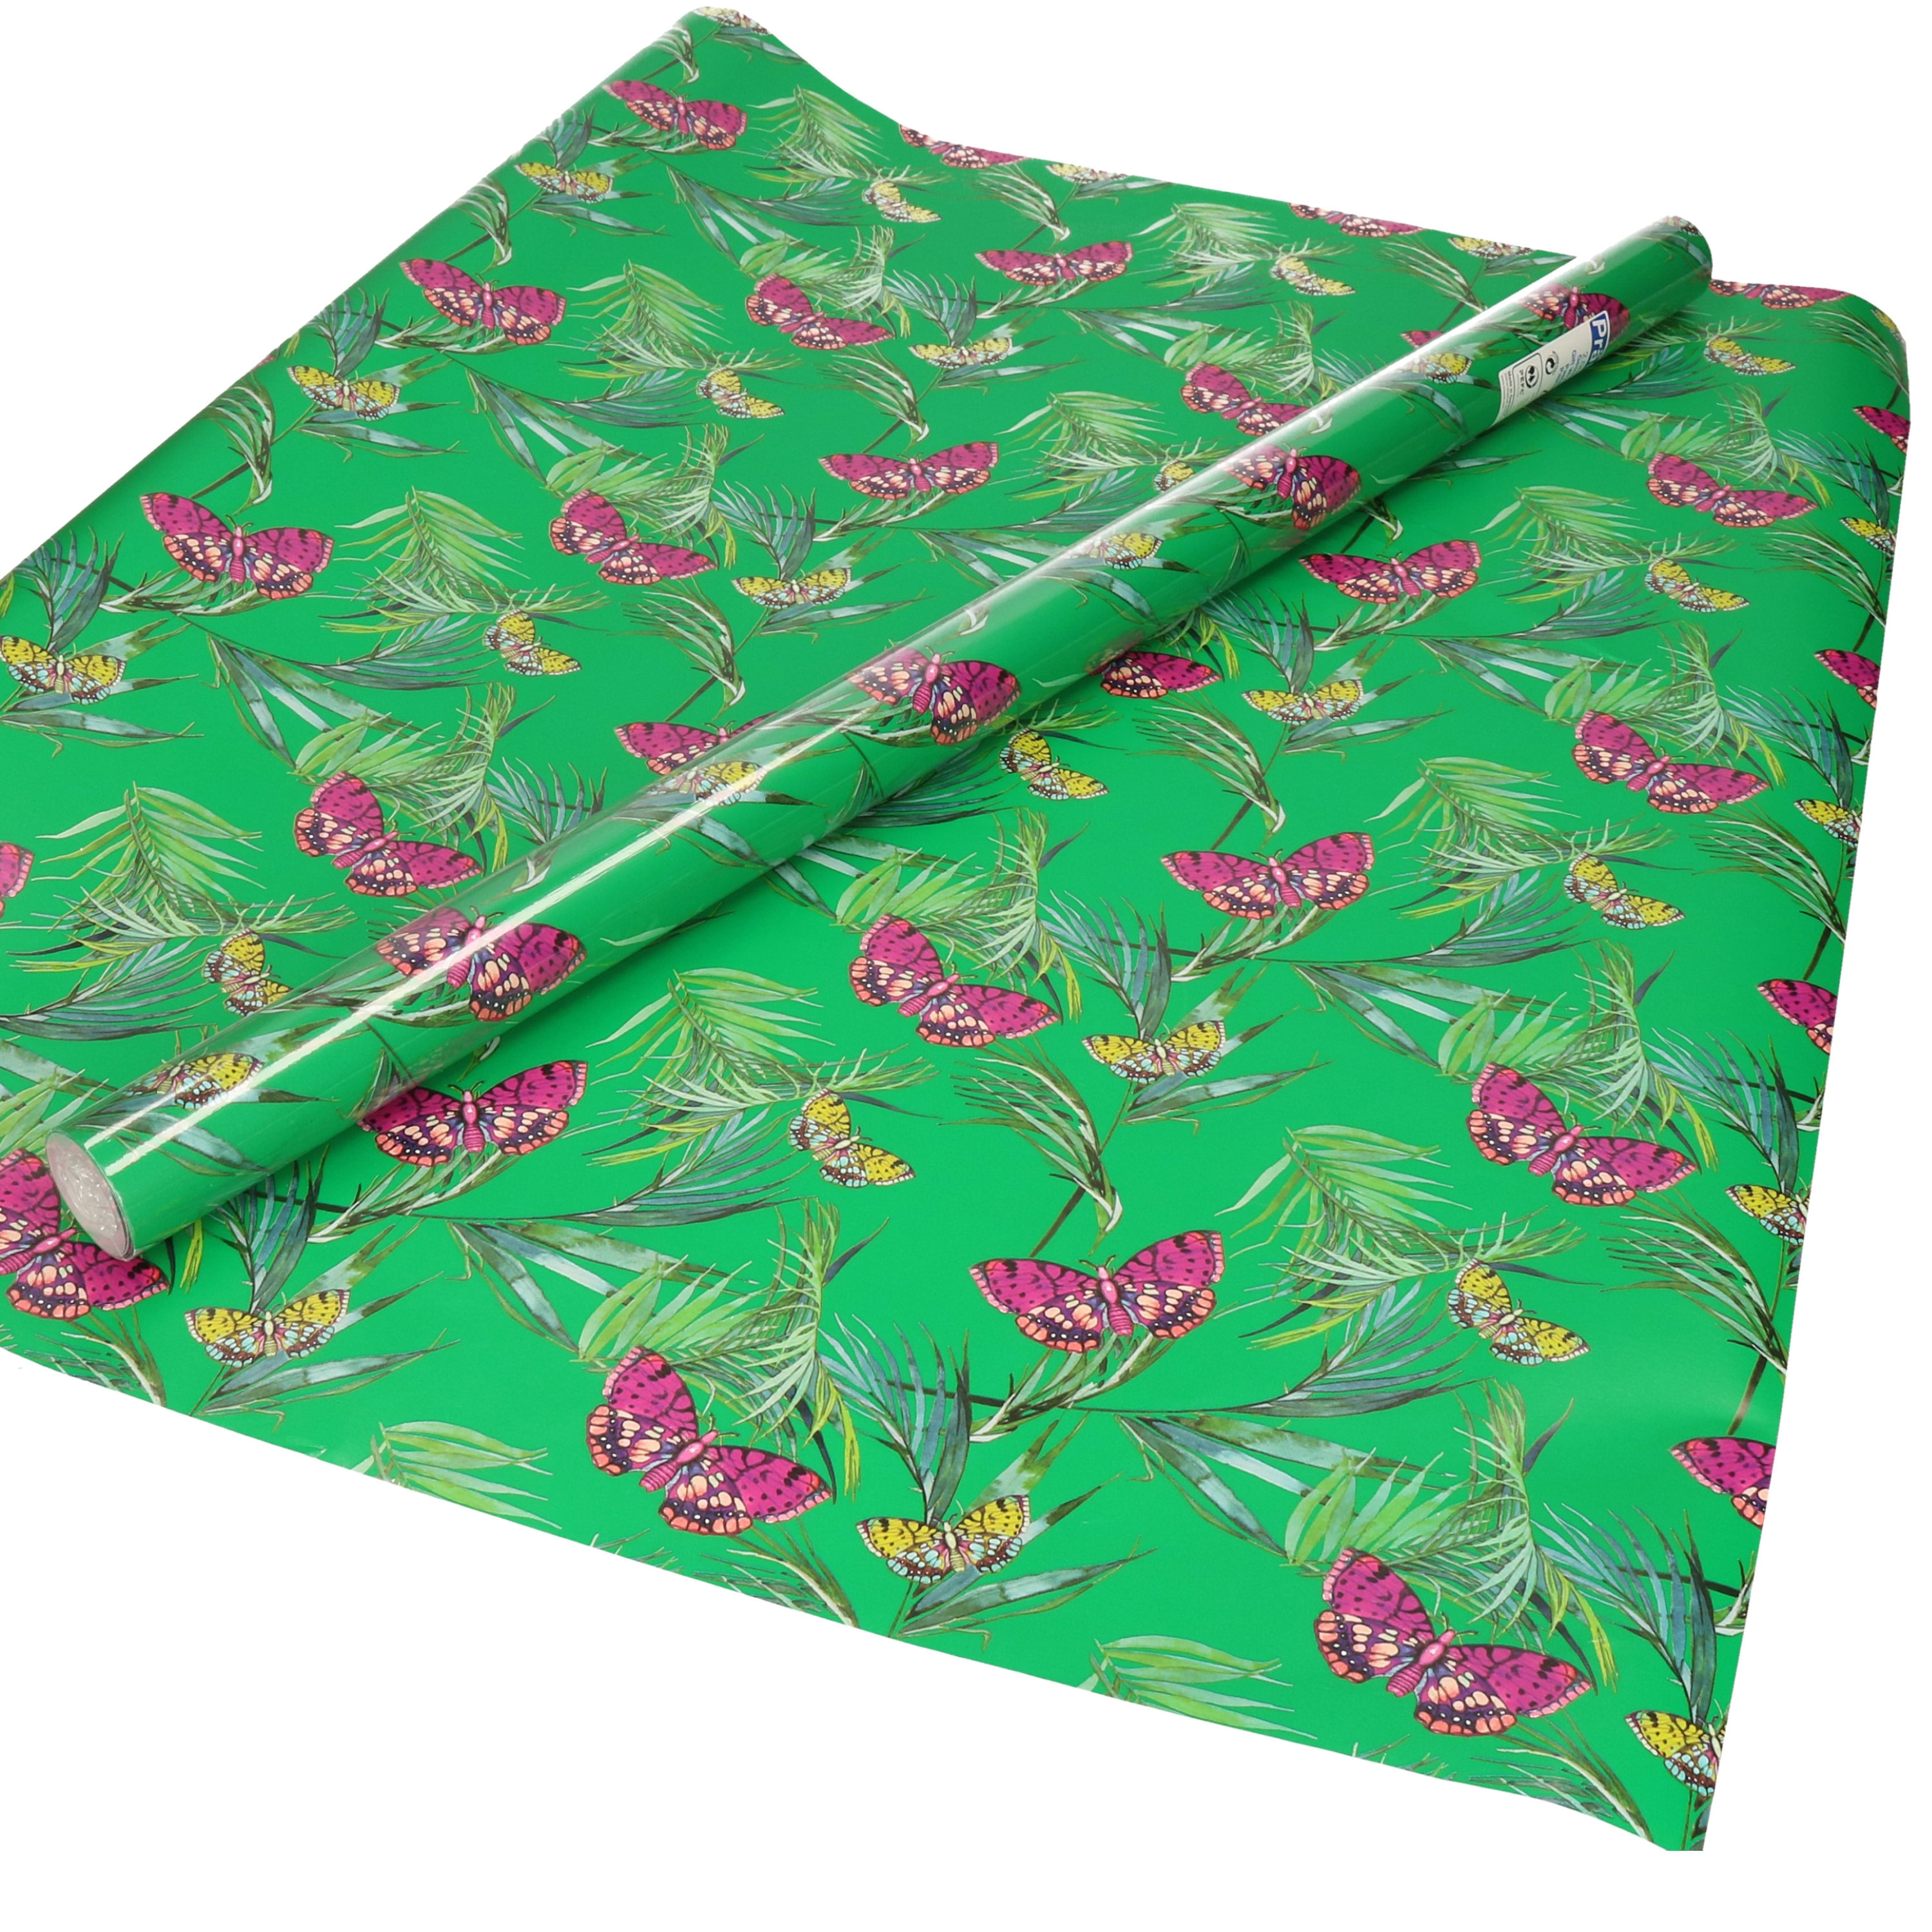 1x Inpakpapier/cadeaupapier groen met paarse vlinders motief 200 x 70 cm rol